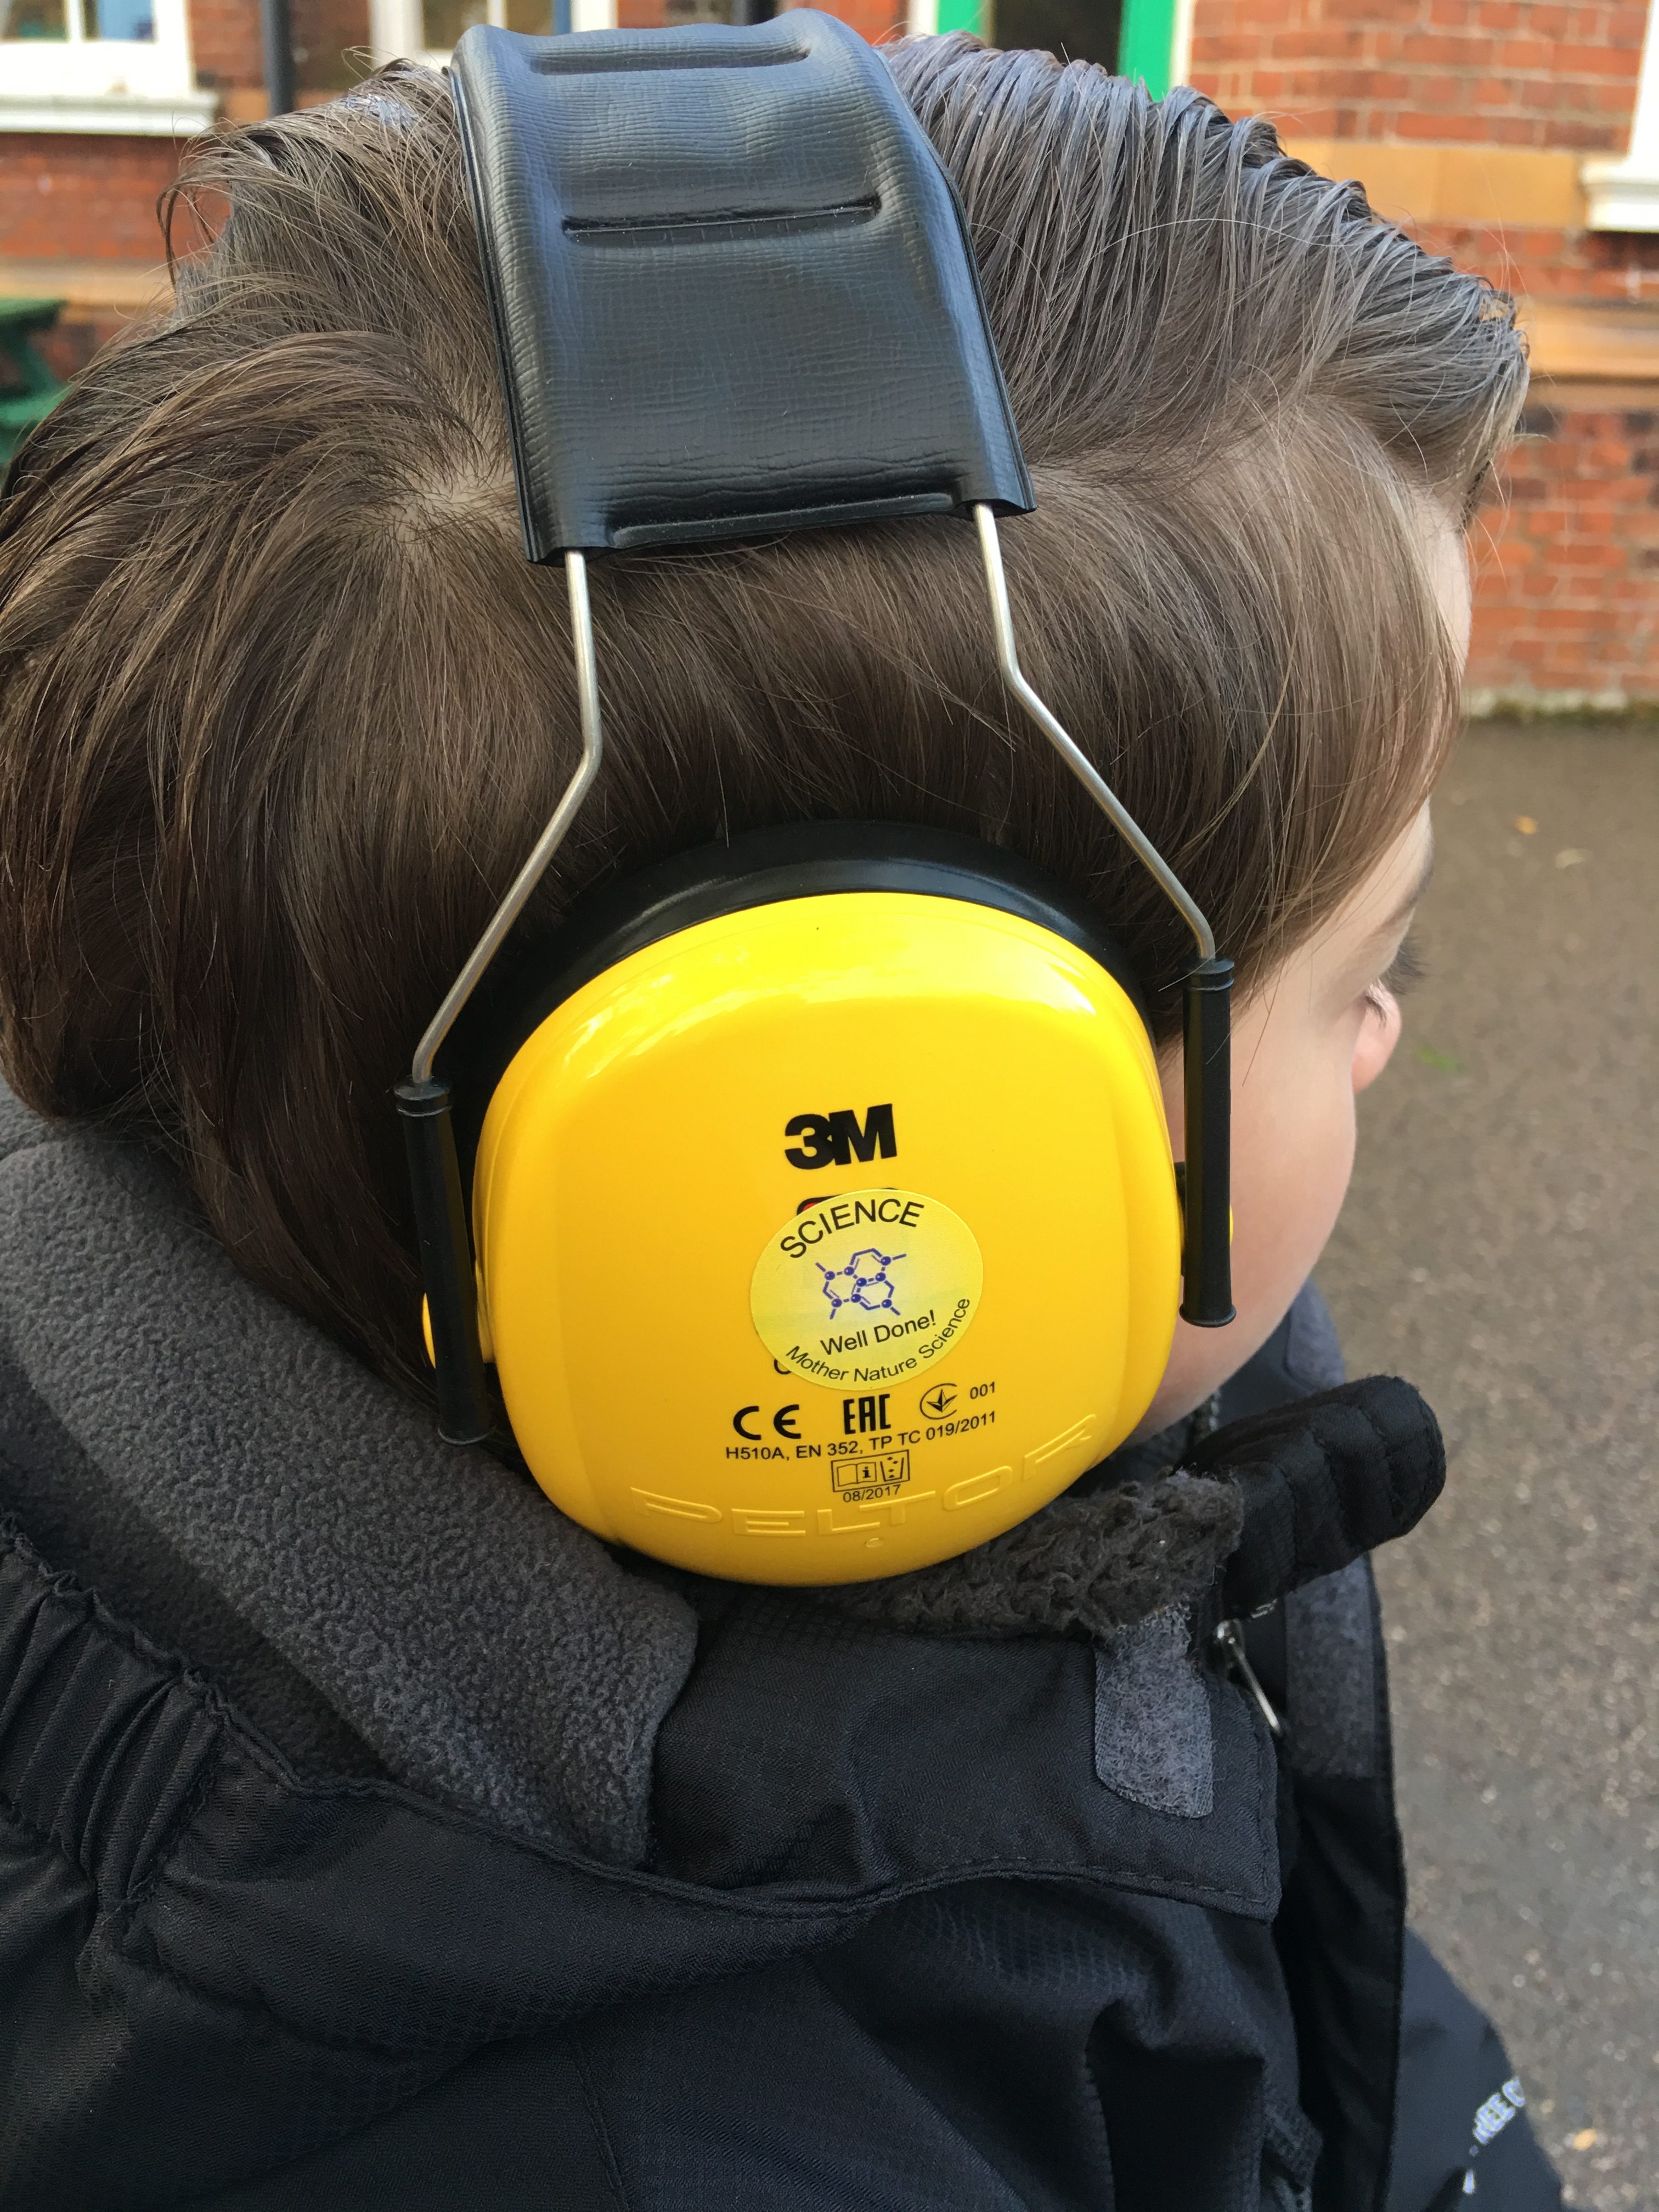 autistic boy with headphones on